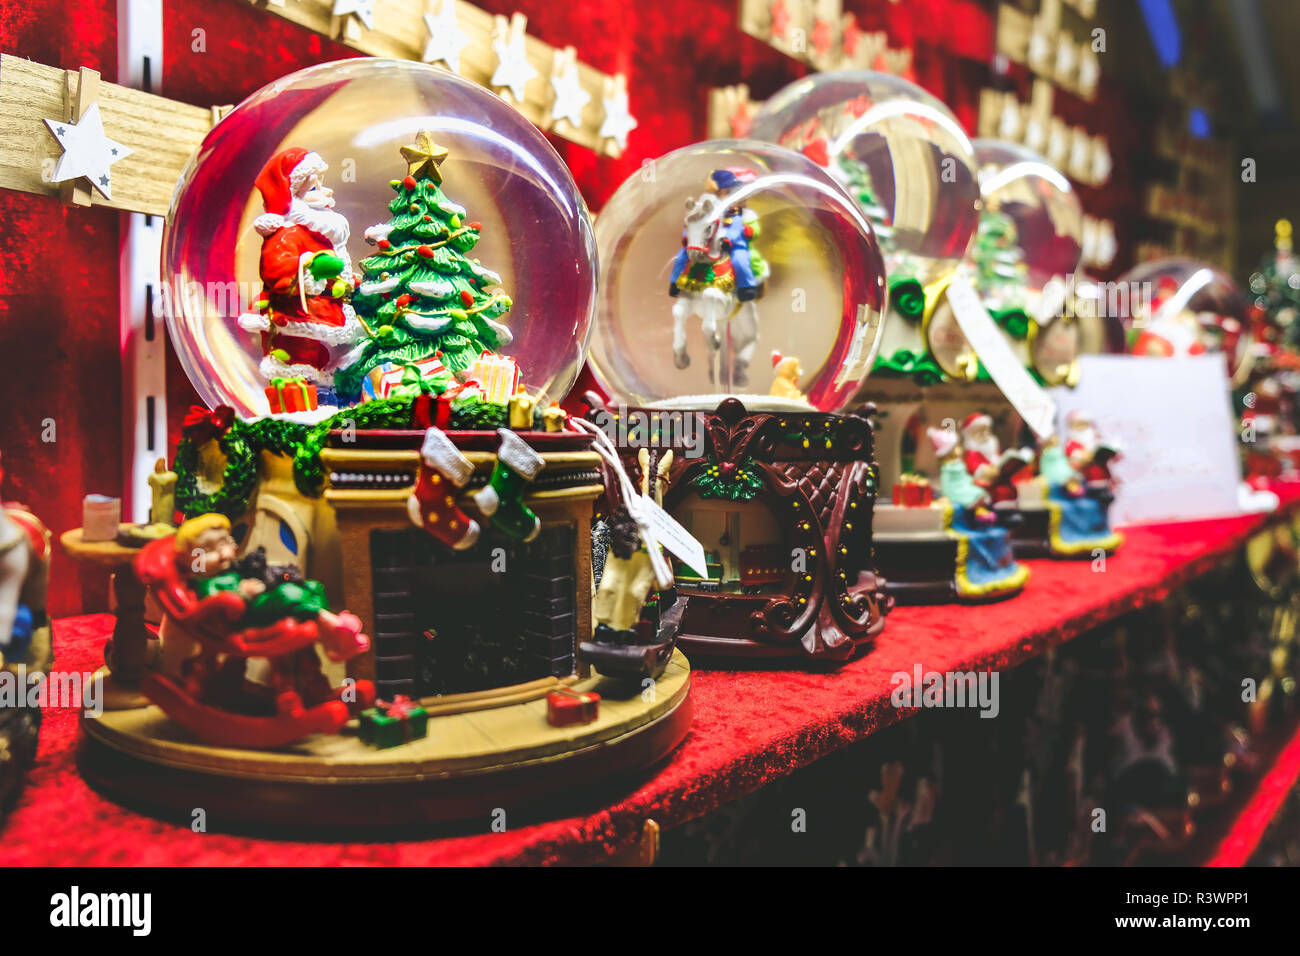 Weihnachten Schneekugel Hintergrund crystal ball mit Santa Claus und christmas tree Innen Stockfoto